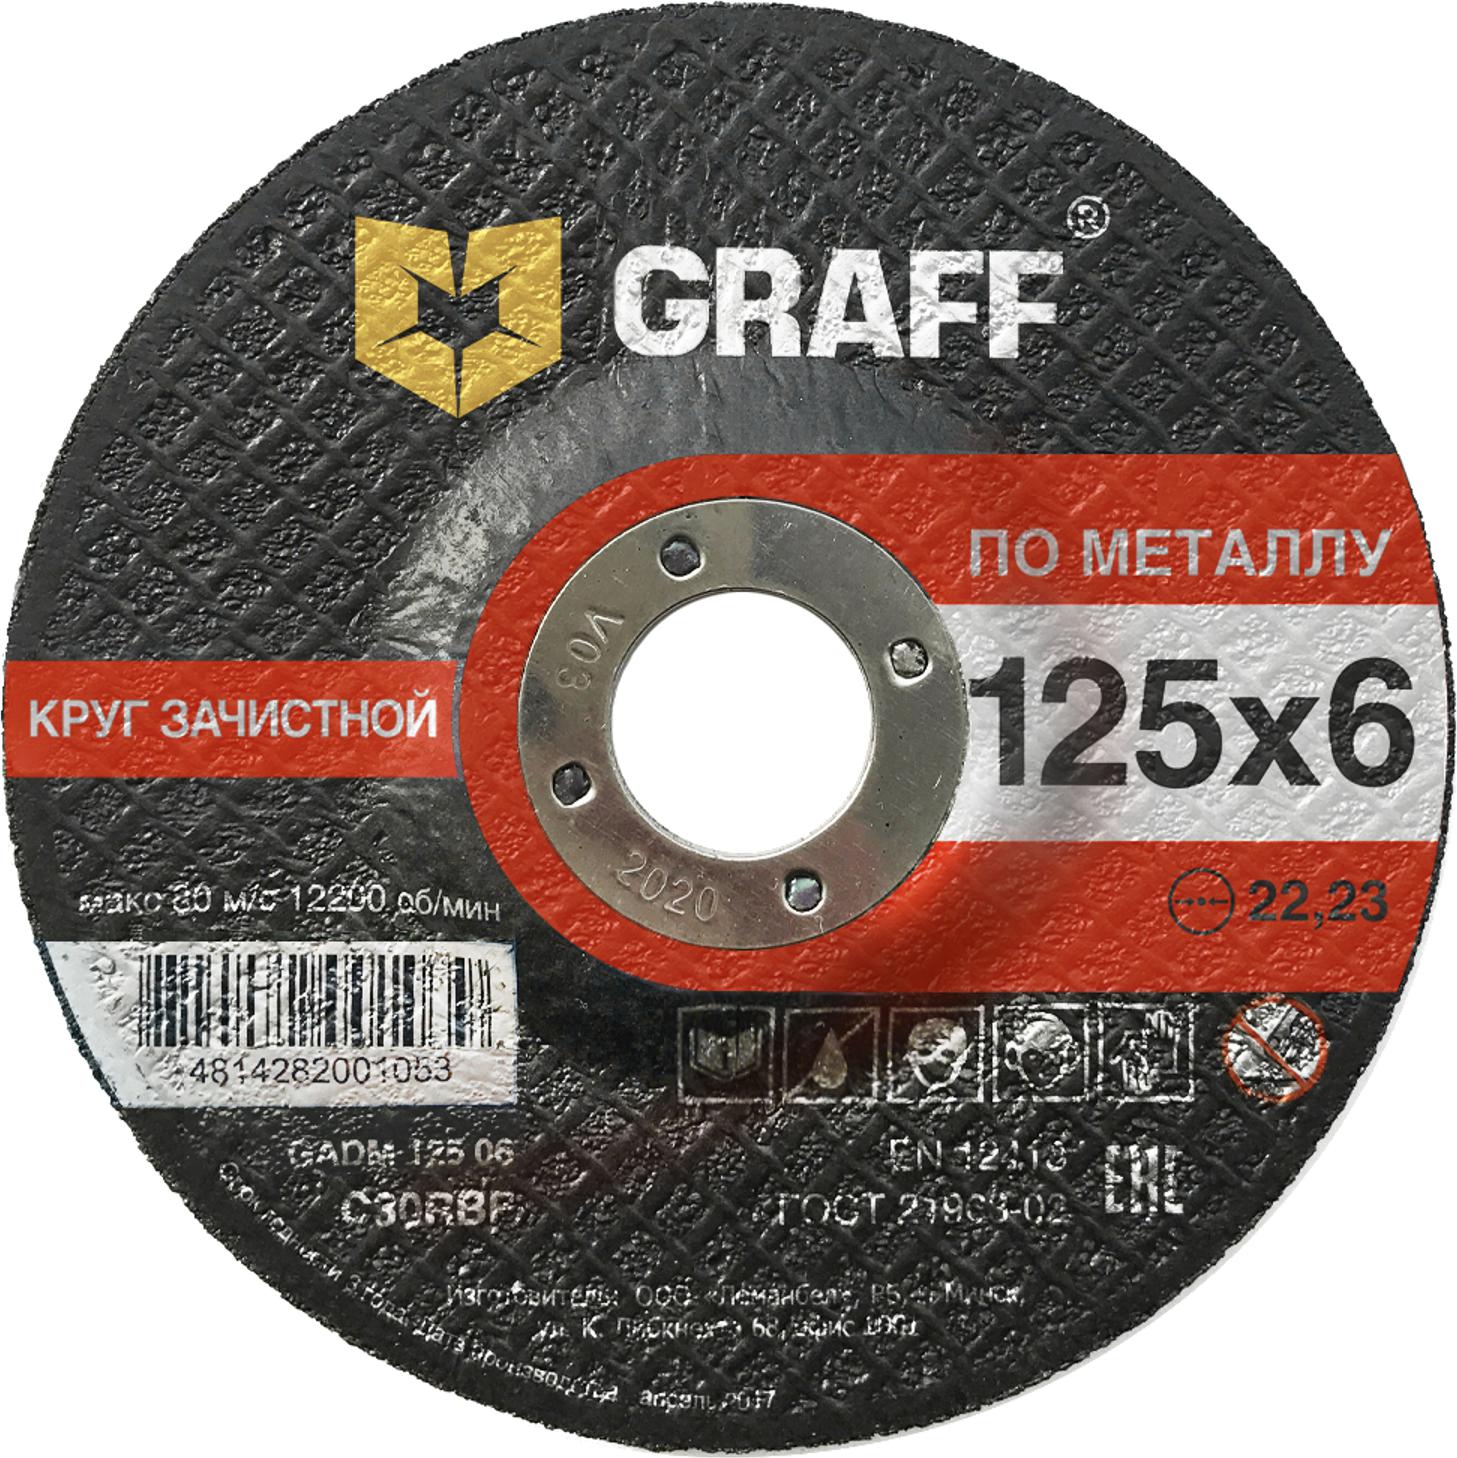 Круг зачистной GRAFF GADM 125 06 круг зачистной быстросъемный пурпурный roxpro clean